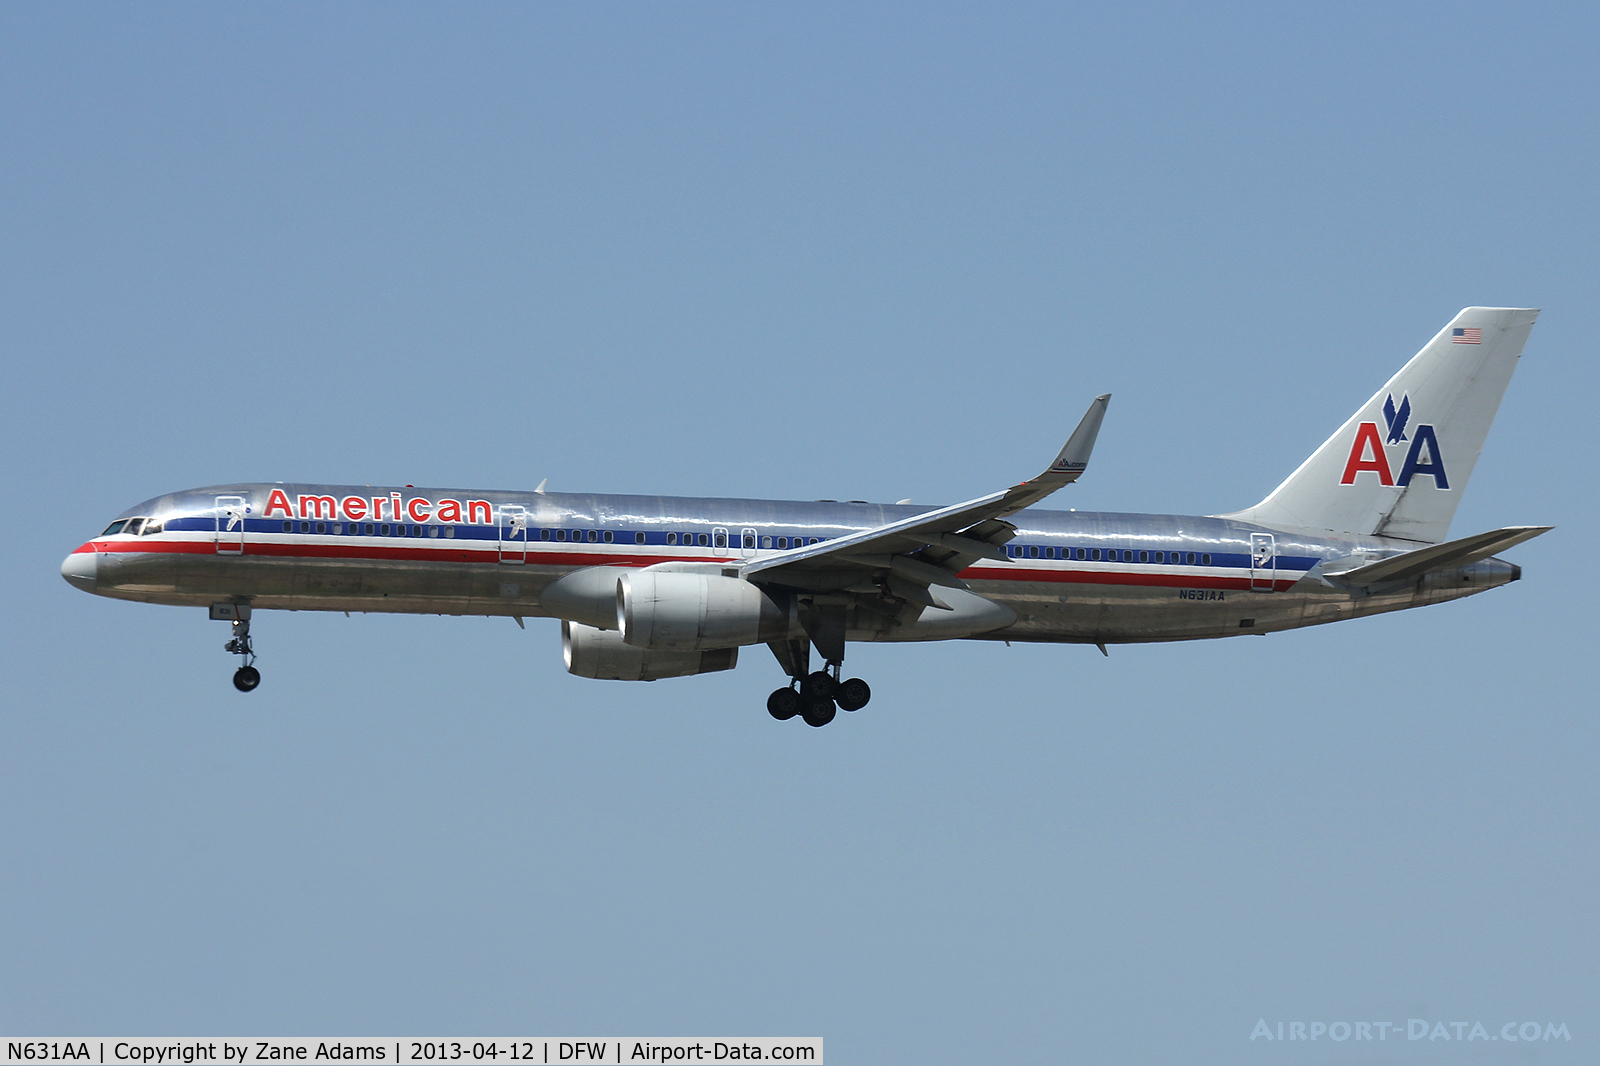 N631AA, 1990 Boeing 757-223 C/N 24589, American Airlines landing at DFW Airport